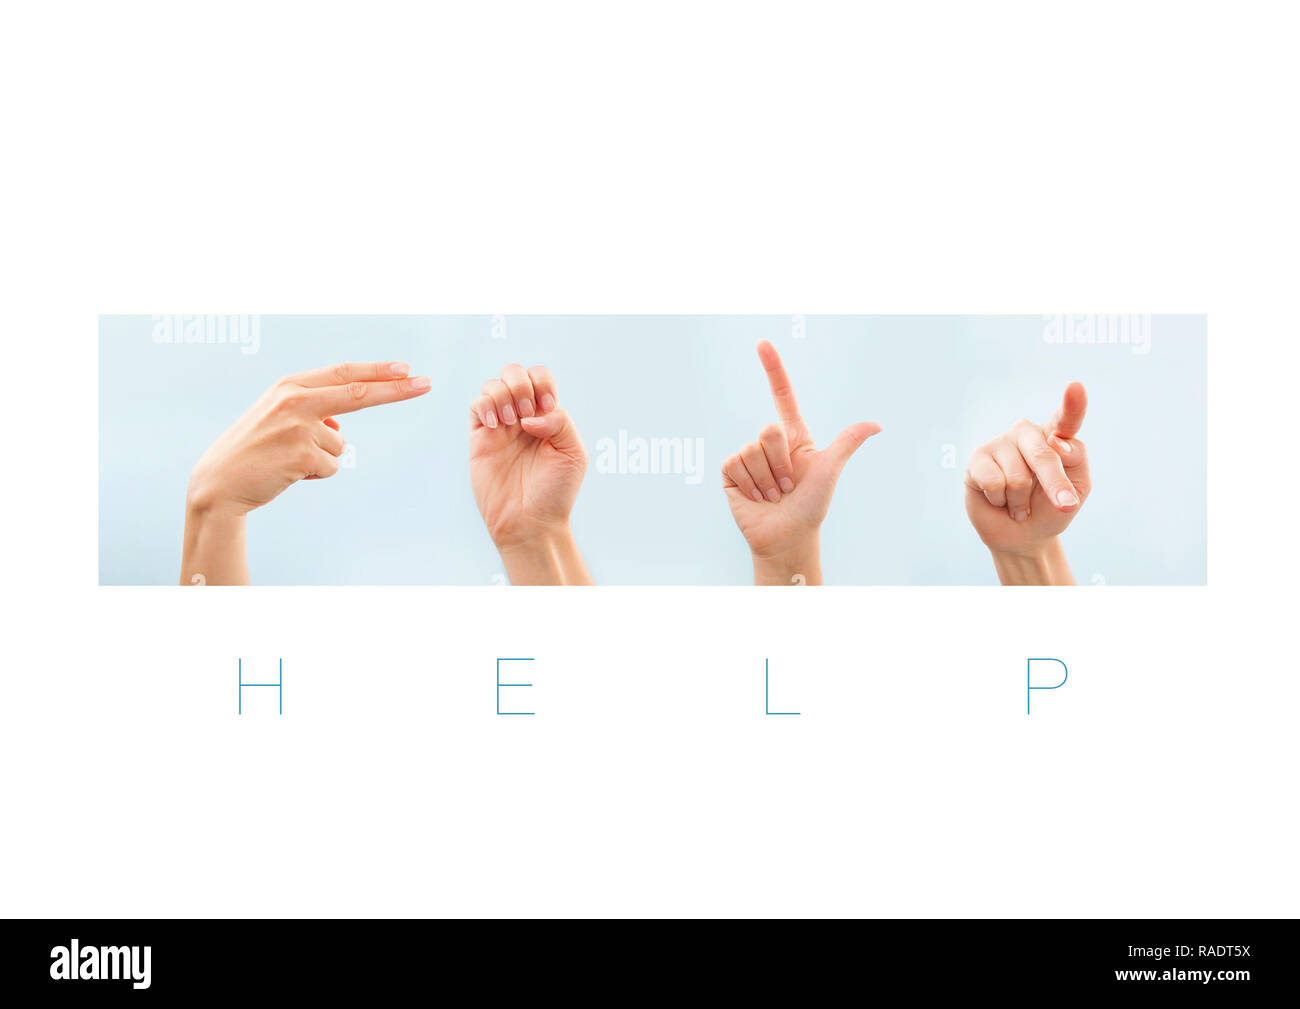 Aide mot dans la langue des signes américaine pour sourd-muet. Message non verbal. Banque D'Images